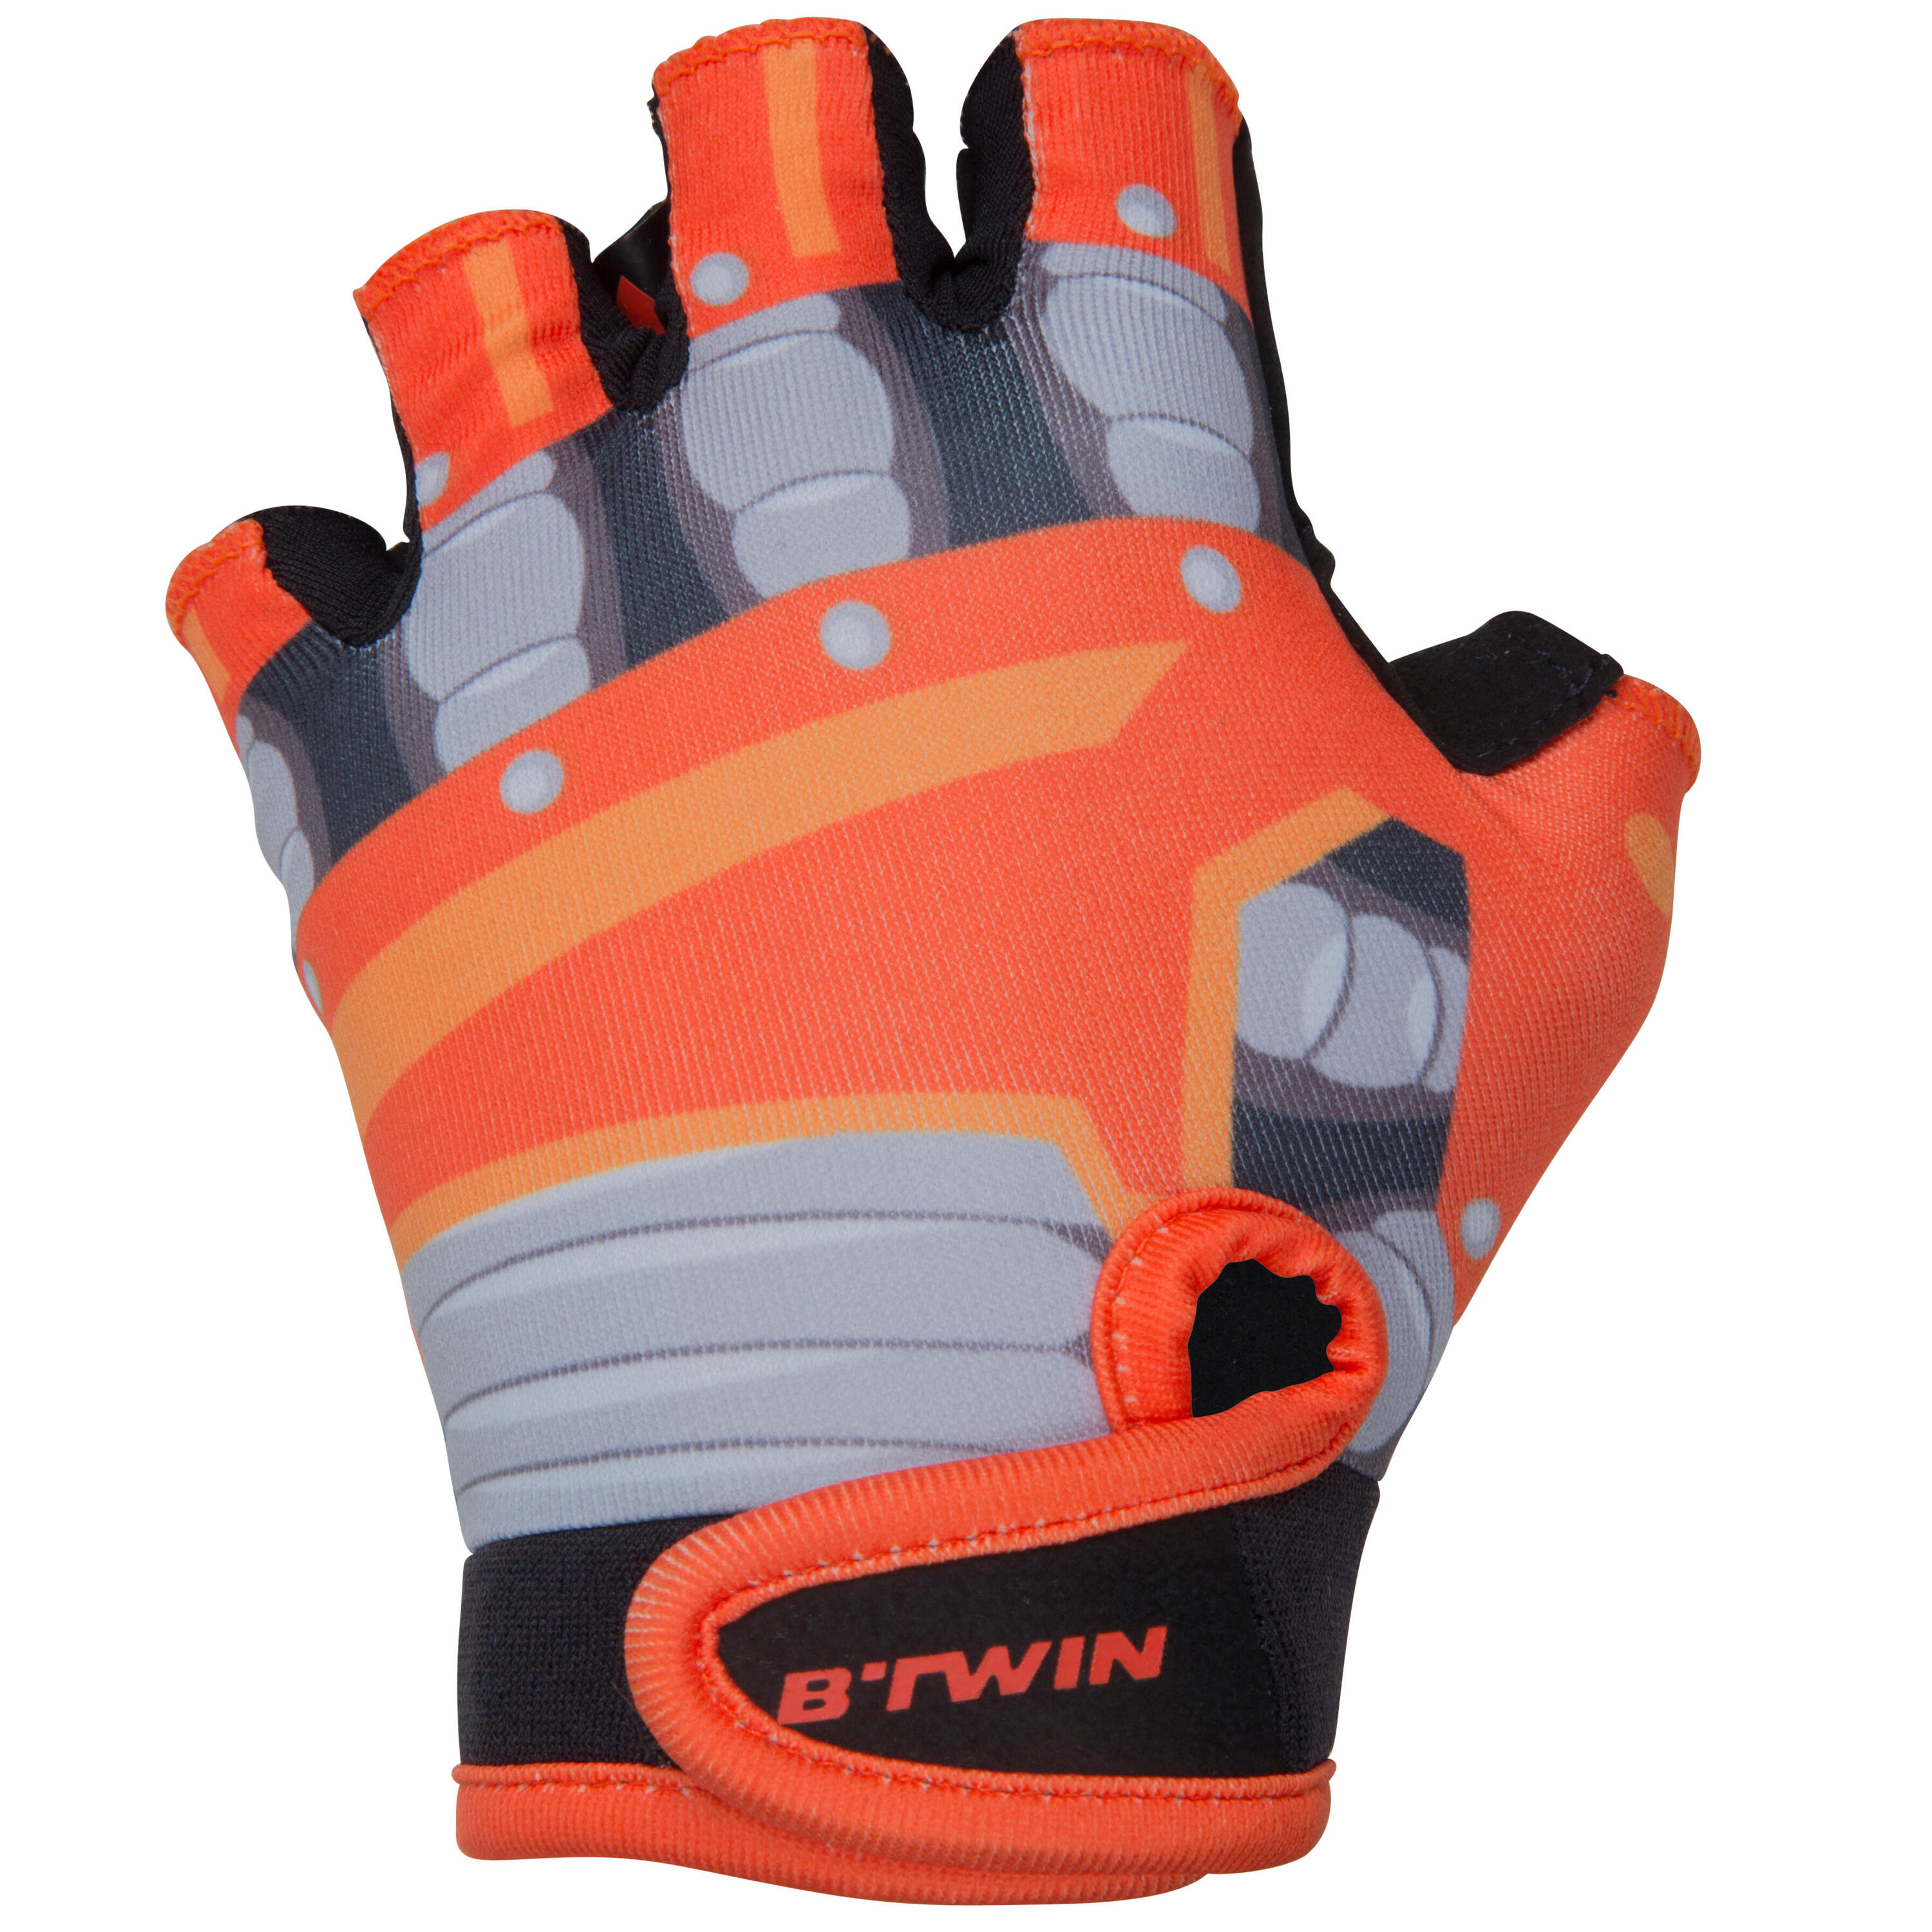 BTWIN Robot Children's Bike Gloves - Orange